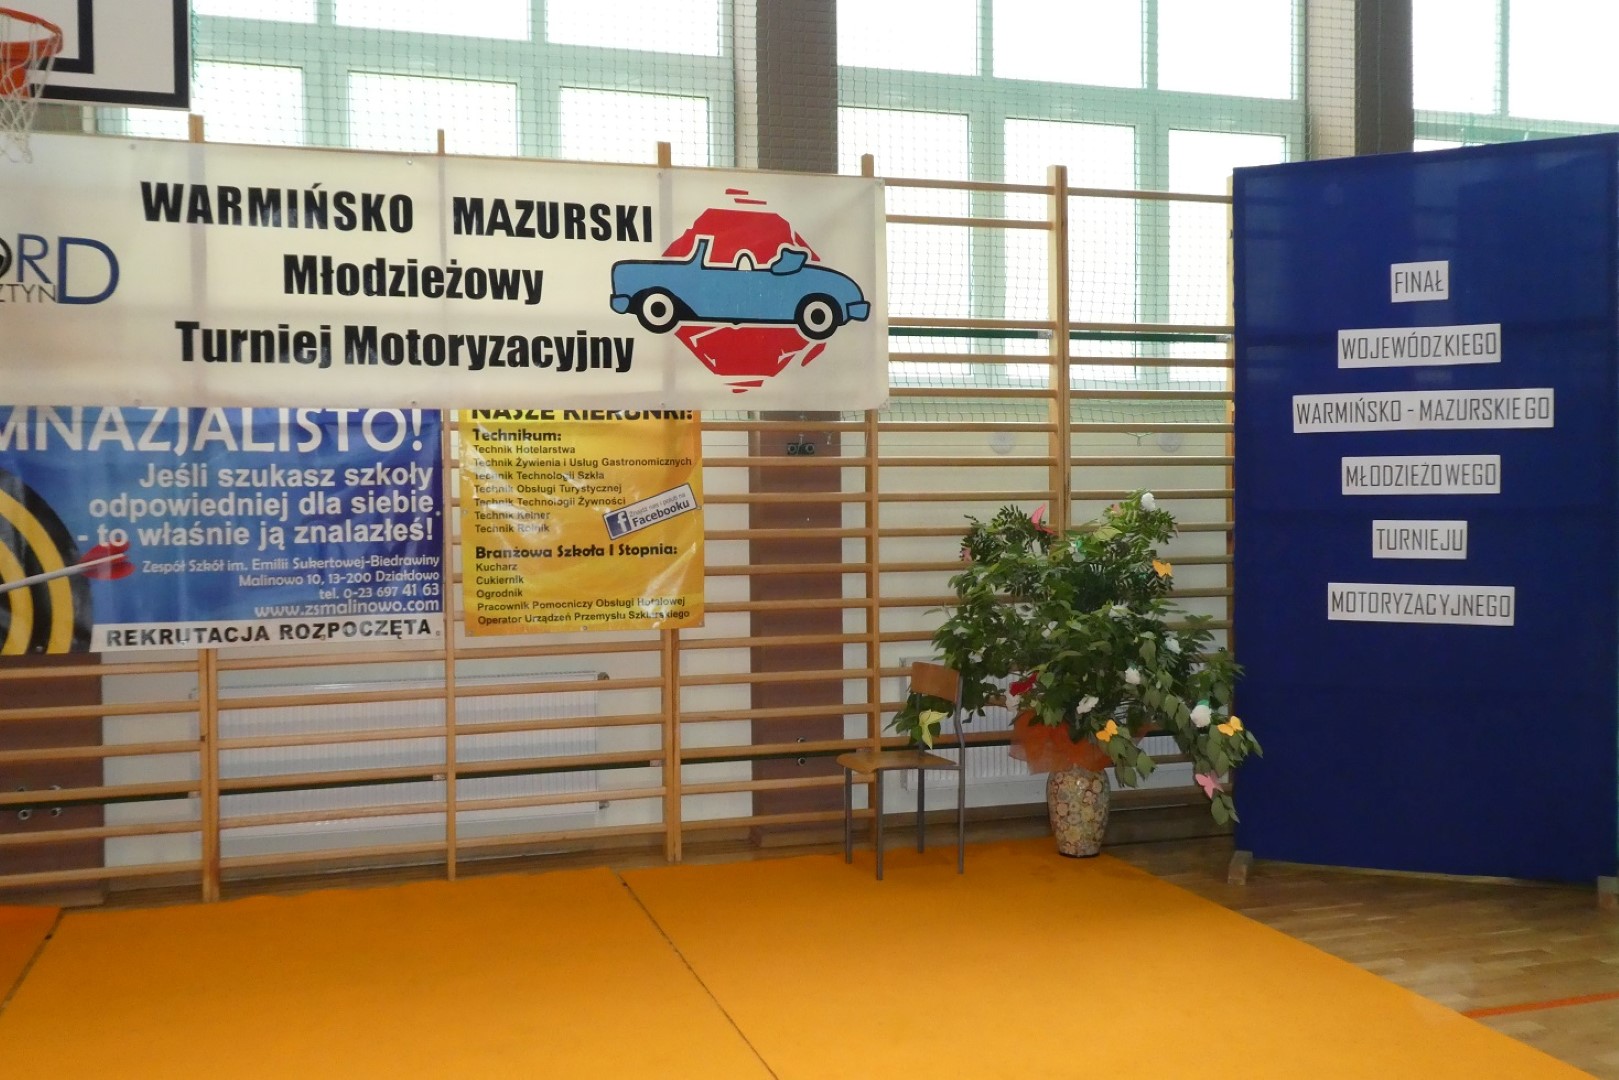 Finał Warmińsko-Mazurskiego Wojewódzkiego Młodzieżowego Turnieju Motoryzacyjnego